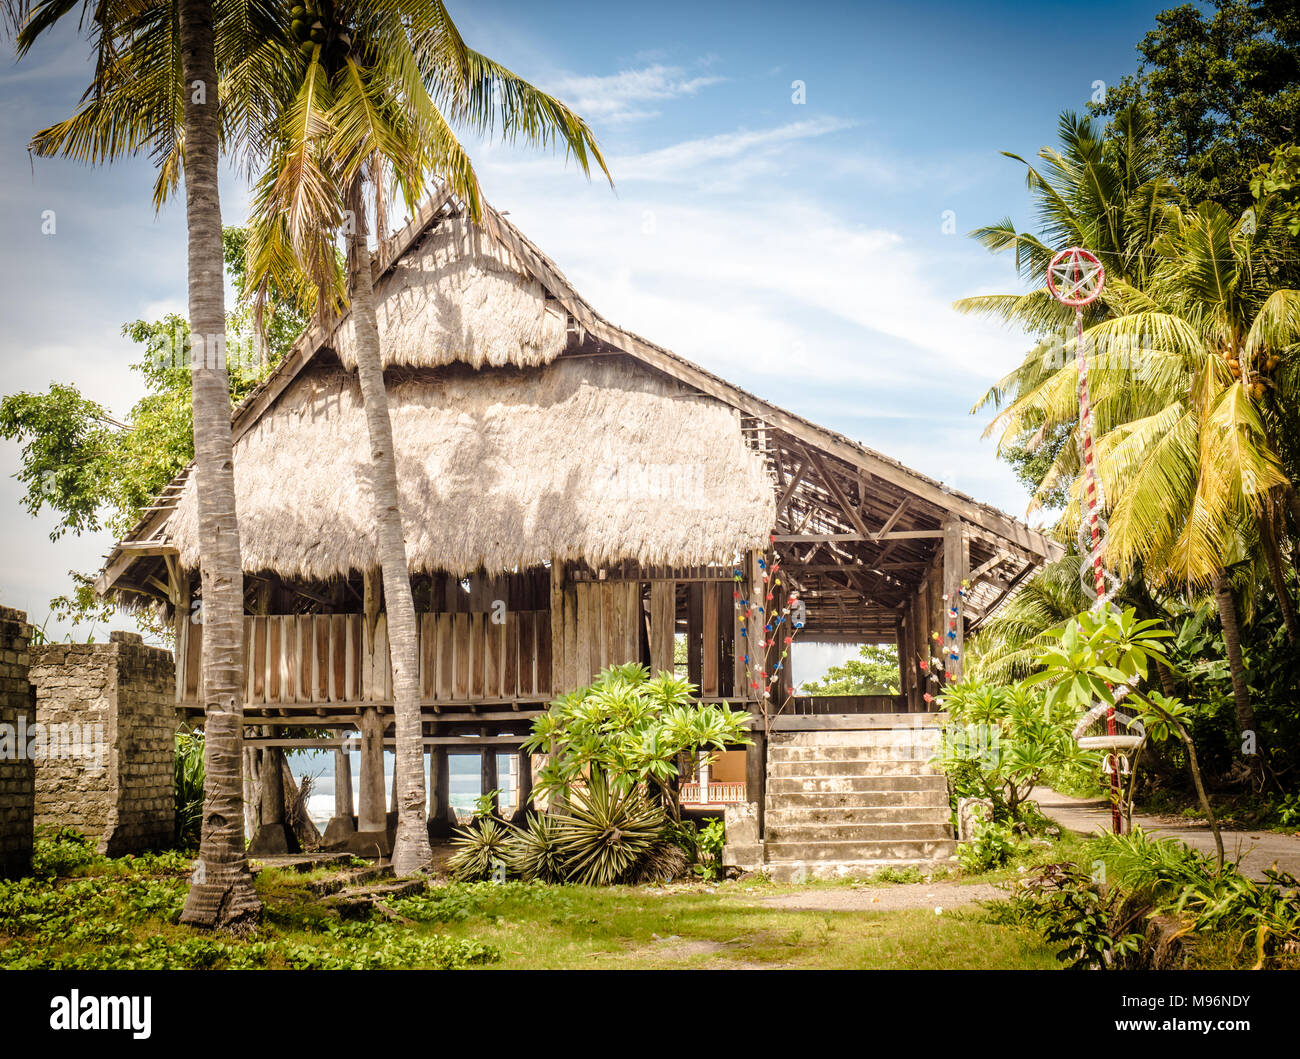 Holz- Haus in einem typischen Dorf der Insel Flores, Ost Nusa Tenggara, Indonesien. Hervorragende lokale Architektur. Stockfoto